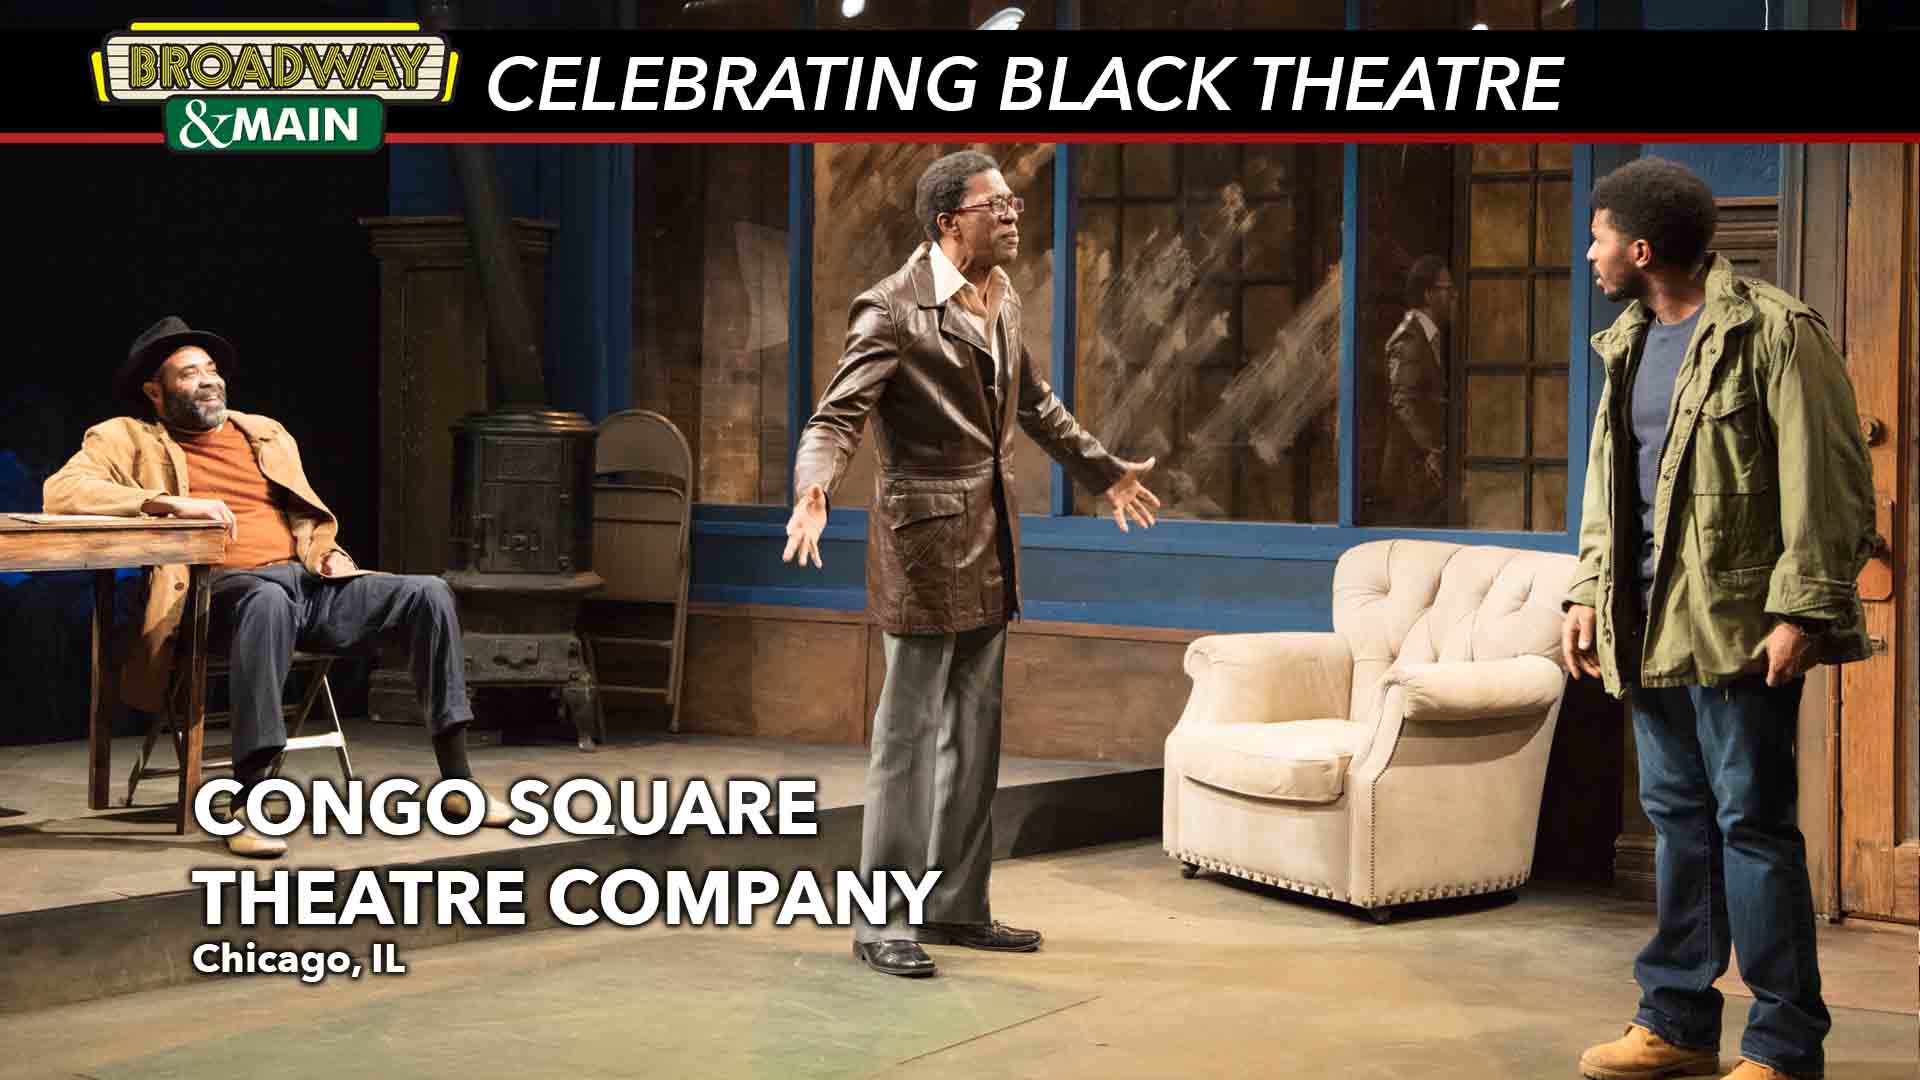 Congo Square Theatre Company 'Celebrating Blackness' in the Windy City